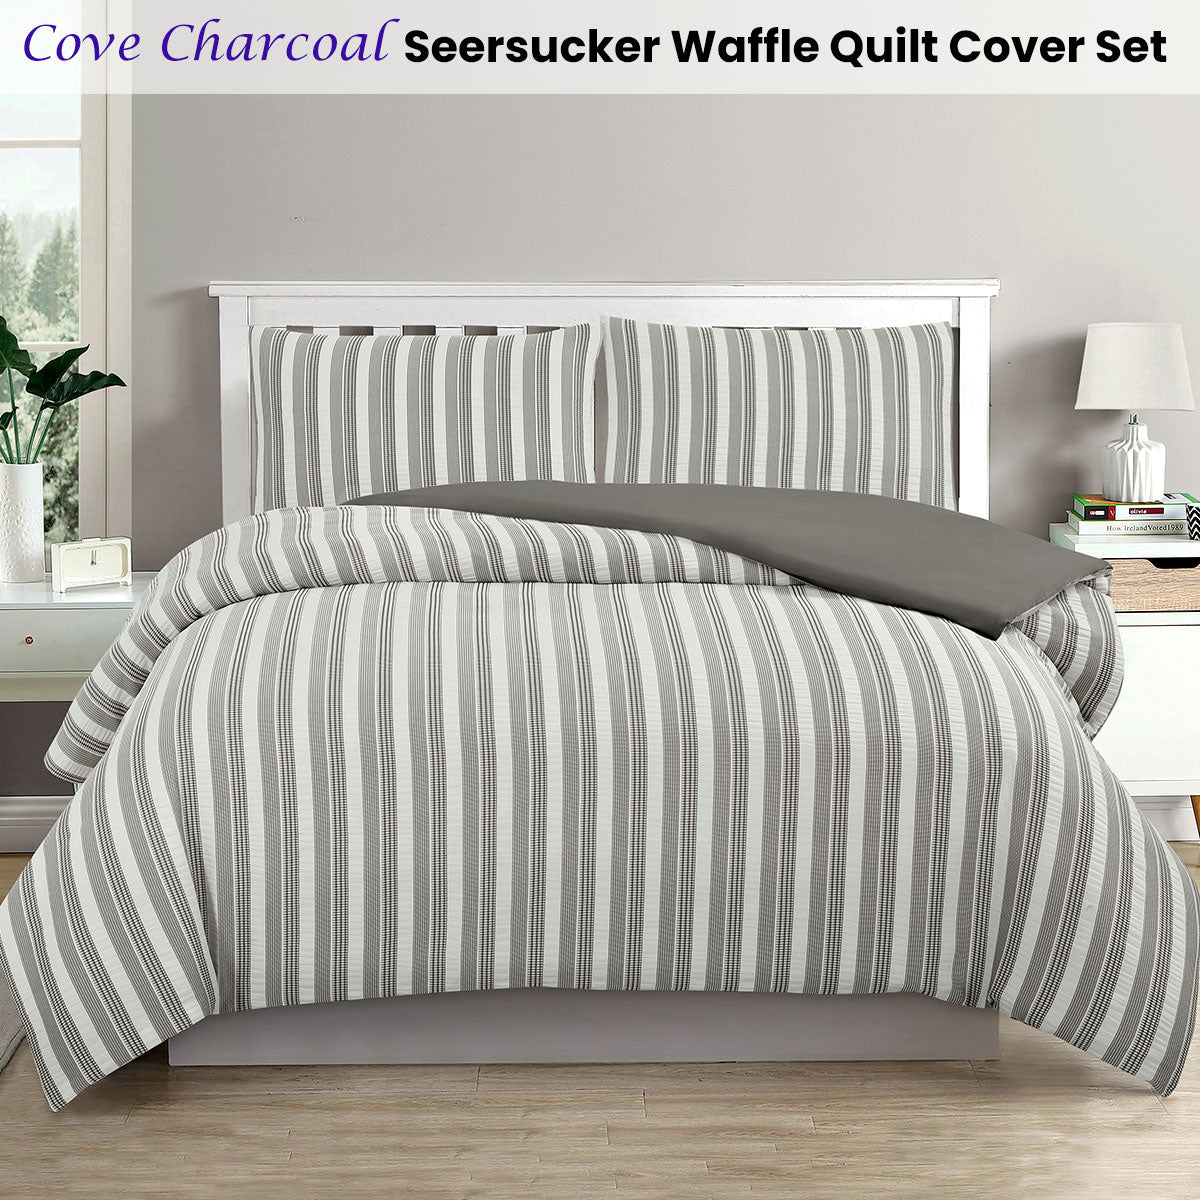 Ardor Cove Charcoal Seersucker Waffle Queen Size Quilt Cover Set